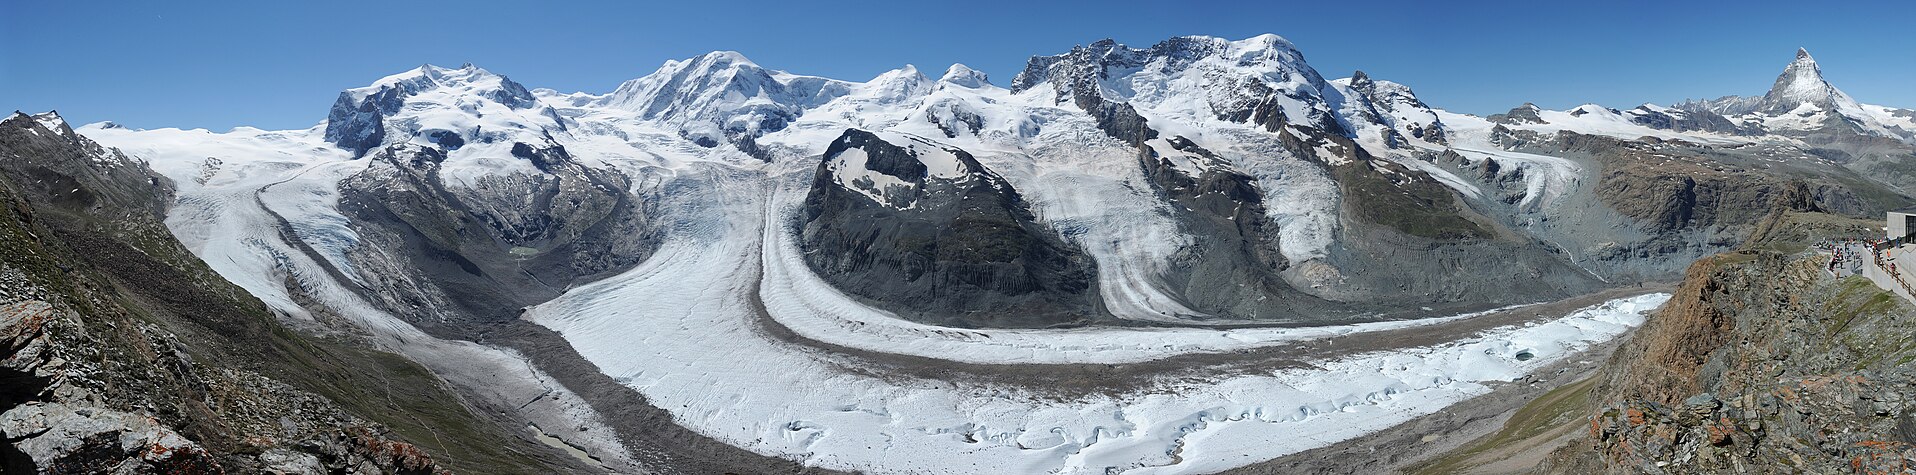 Panorama des Alpenhauptkamms südlich von Zermatt. Die Hauptgipfel und -grate, die sichtbar sind, sind (von links nach rechts): Weissgrat, Nordend und Dufourspitze (Monte-Rosa-Massiv), Liskamm, Castor, Pollux, Breithorn, Klein Matterhorn, Matterhorn. Die abgebildeten Gletscher sind (von links nach rechts): Gornergletscher (auch im unteren Bildteil), Monte-Rosa-Gletscher, Grenzgletscher, Schwärzegletscher, Breithorngletscher, Triftjigletscher, Unterer Theodulgletscher, Oberer Theodulgletscher